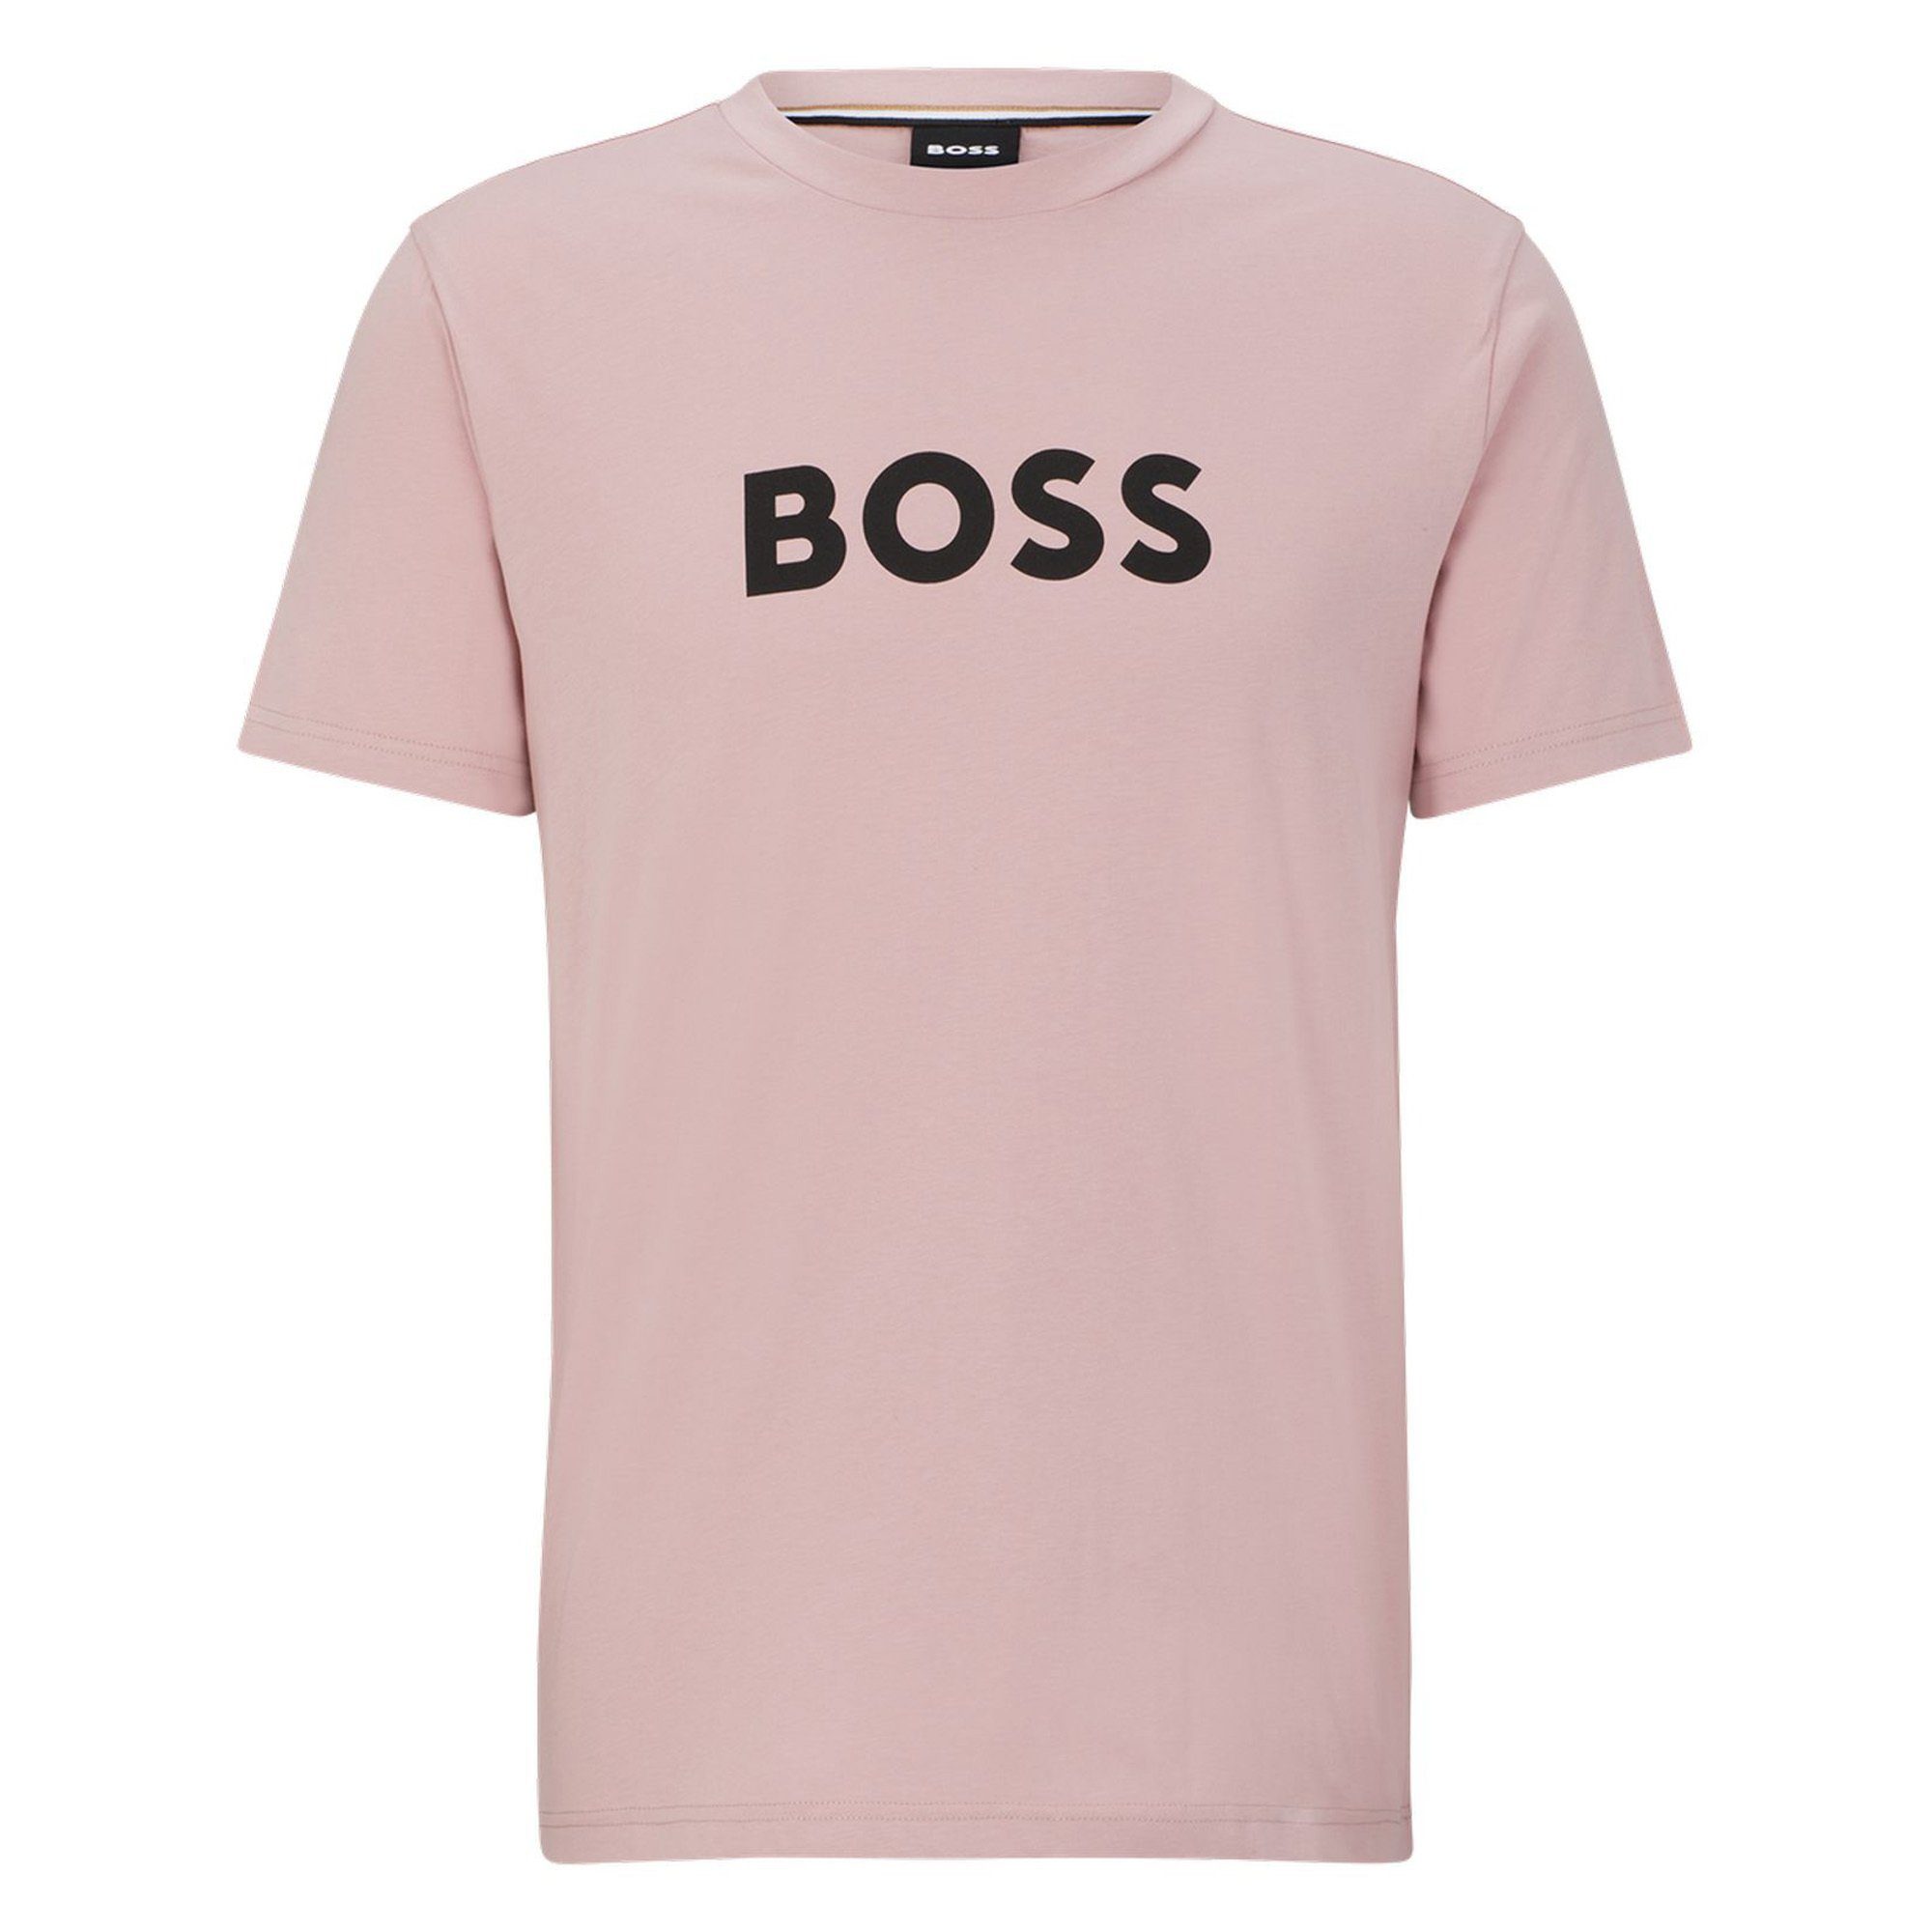 Rundhals, Herren Kurzarm BOSS T-Shirt T-Shirt Rosa T-Shirt - RN,